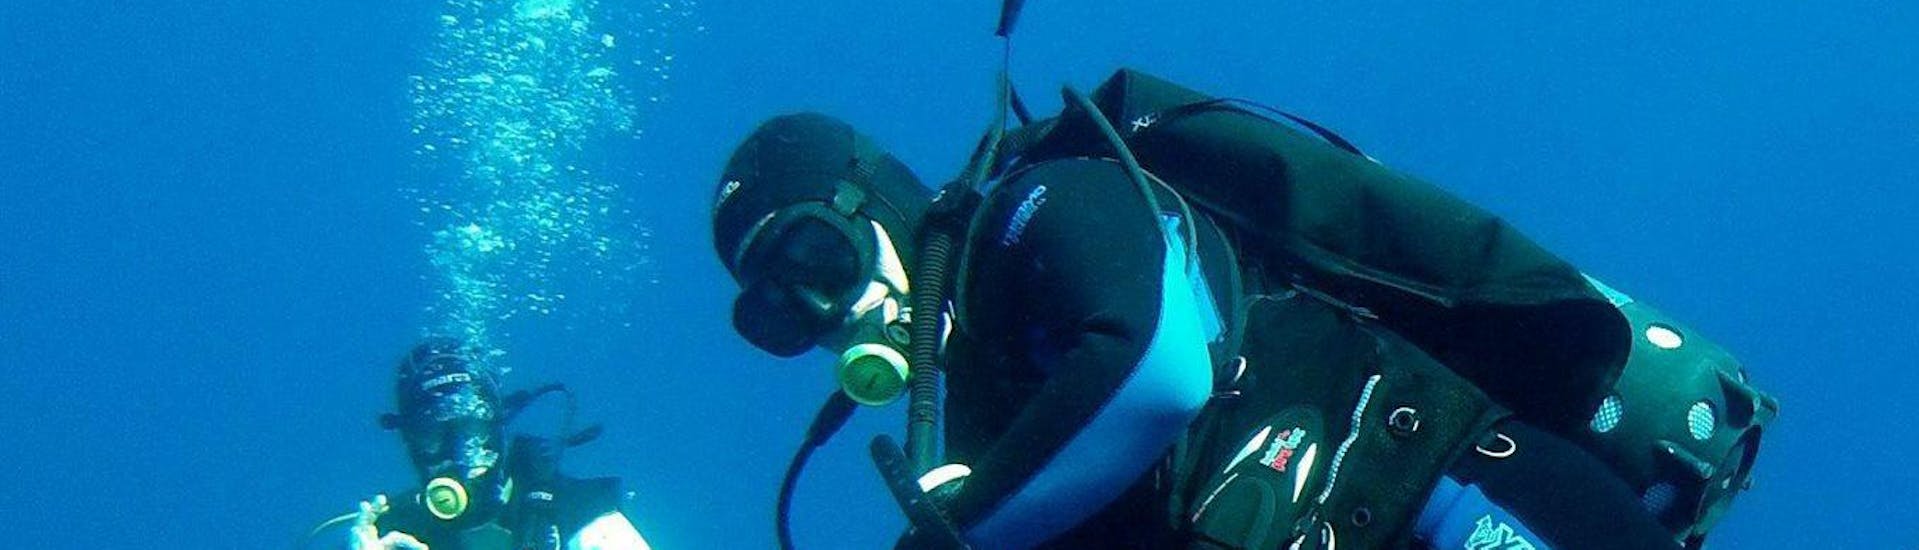 PADI Open Water Diver-cursus in Marsalforn voor beginners.